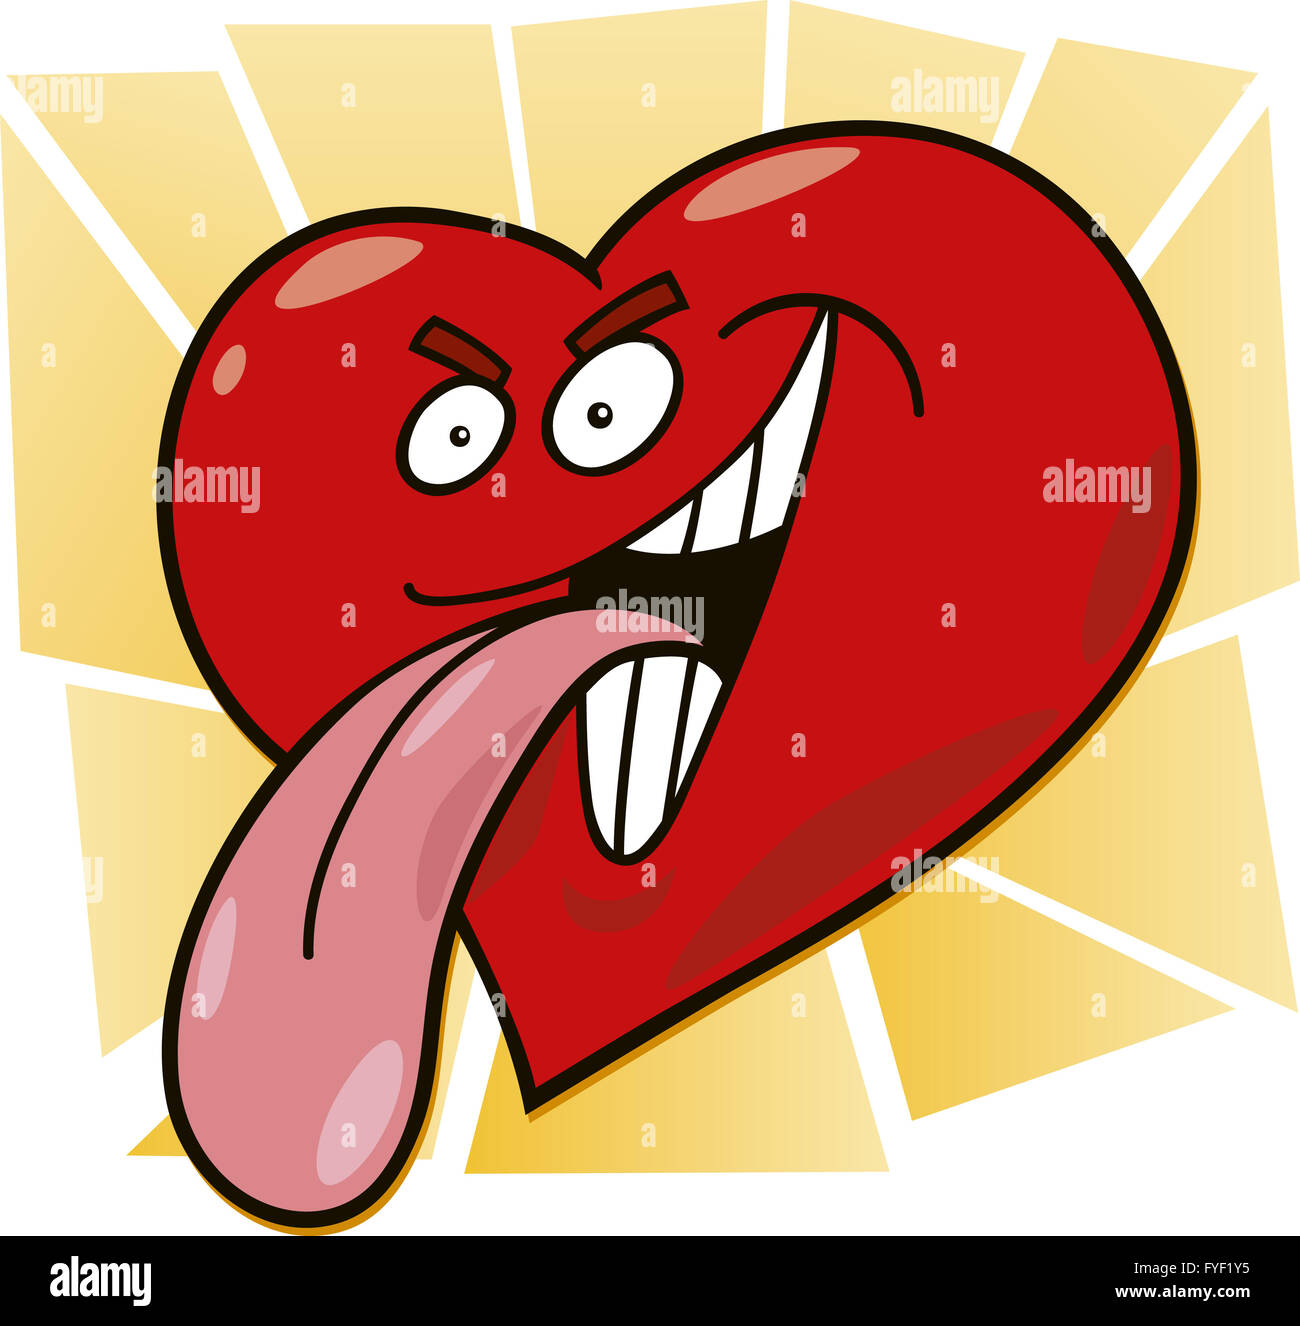 malicious heart Stock Photo